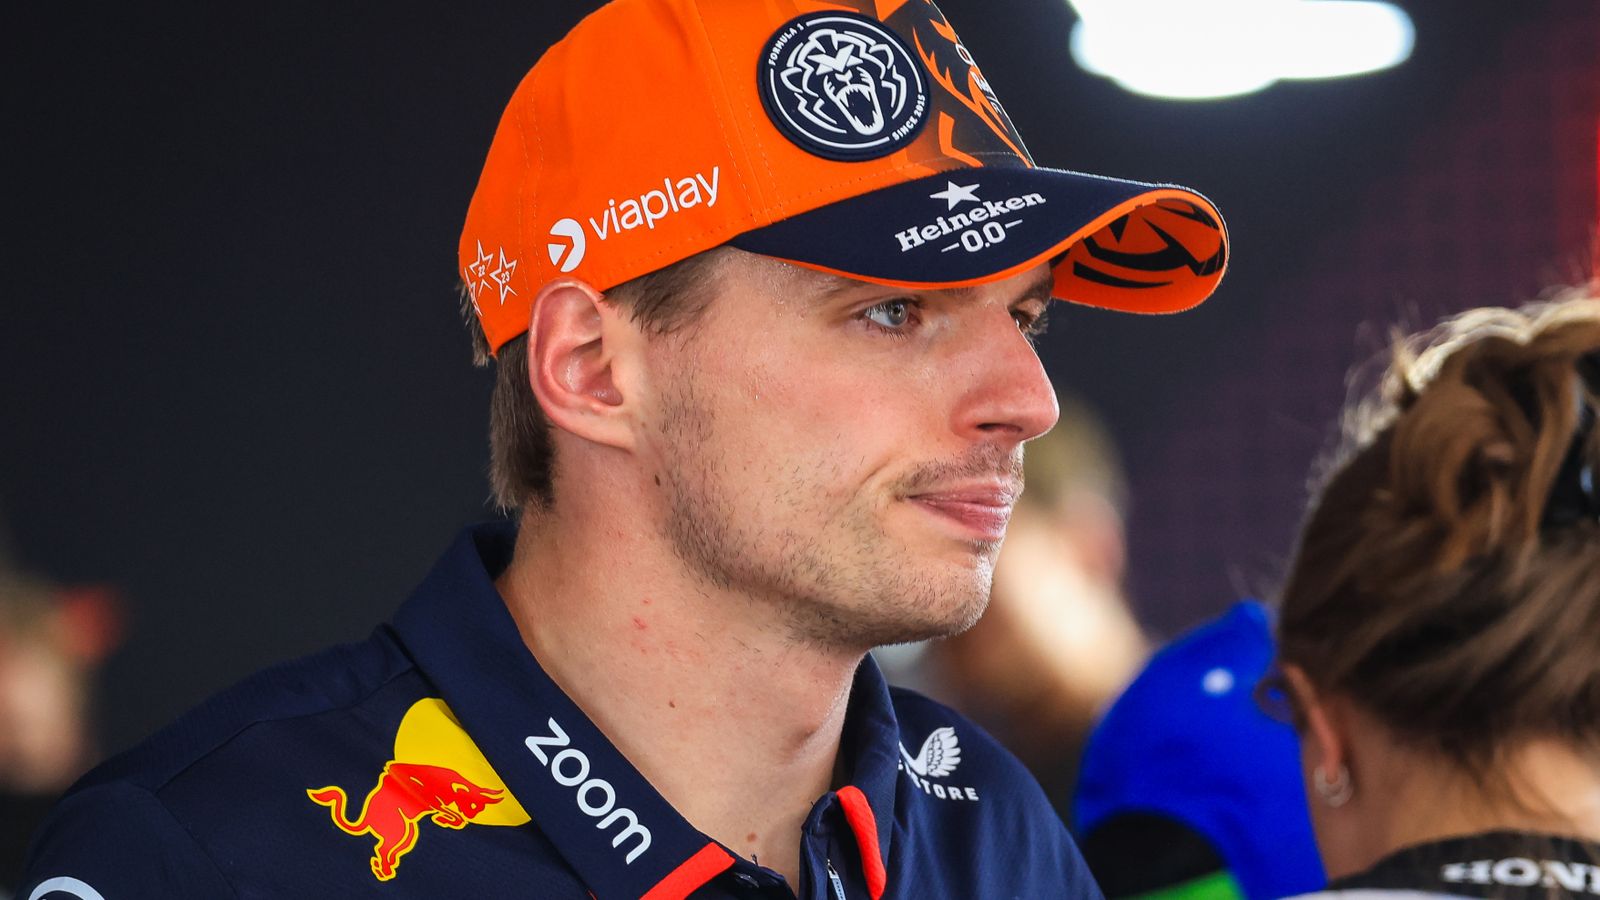 Fórmula 1: Max Verstappen, de Red Bull, será penalizado con 10 puestos en la parrilla de salida del Gran Premio de Bélgica tras exceder la capacidad del motor | Noticias de F1